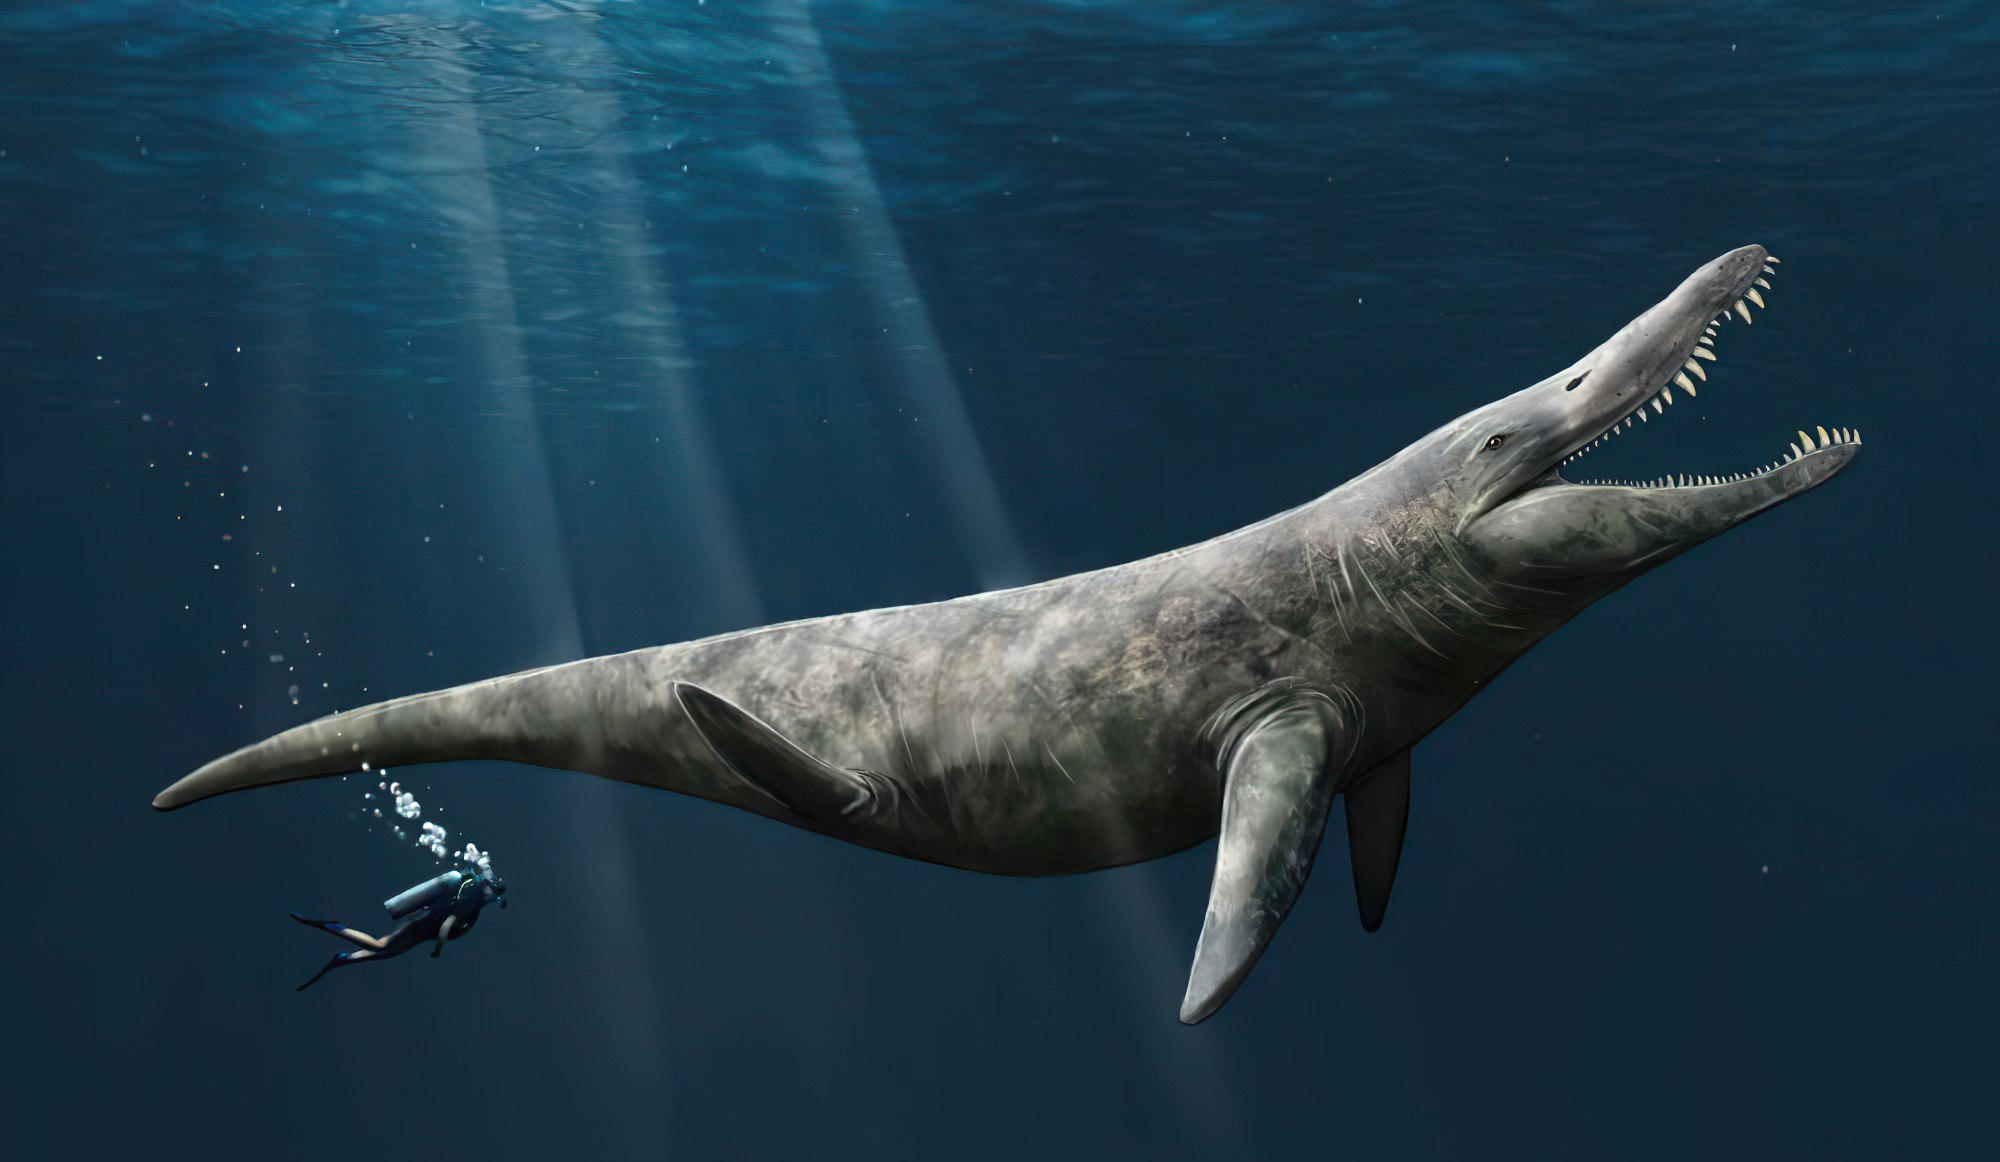 Doppelt so groß wie der Killerwal Neue Erkenntnisse deuten darauf hin, dass riesige Pliosaurier in den Meeren des späten Jura schwammen